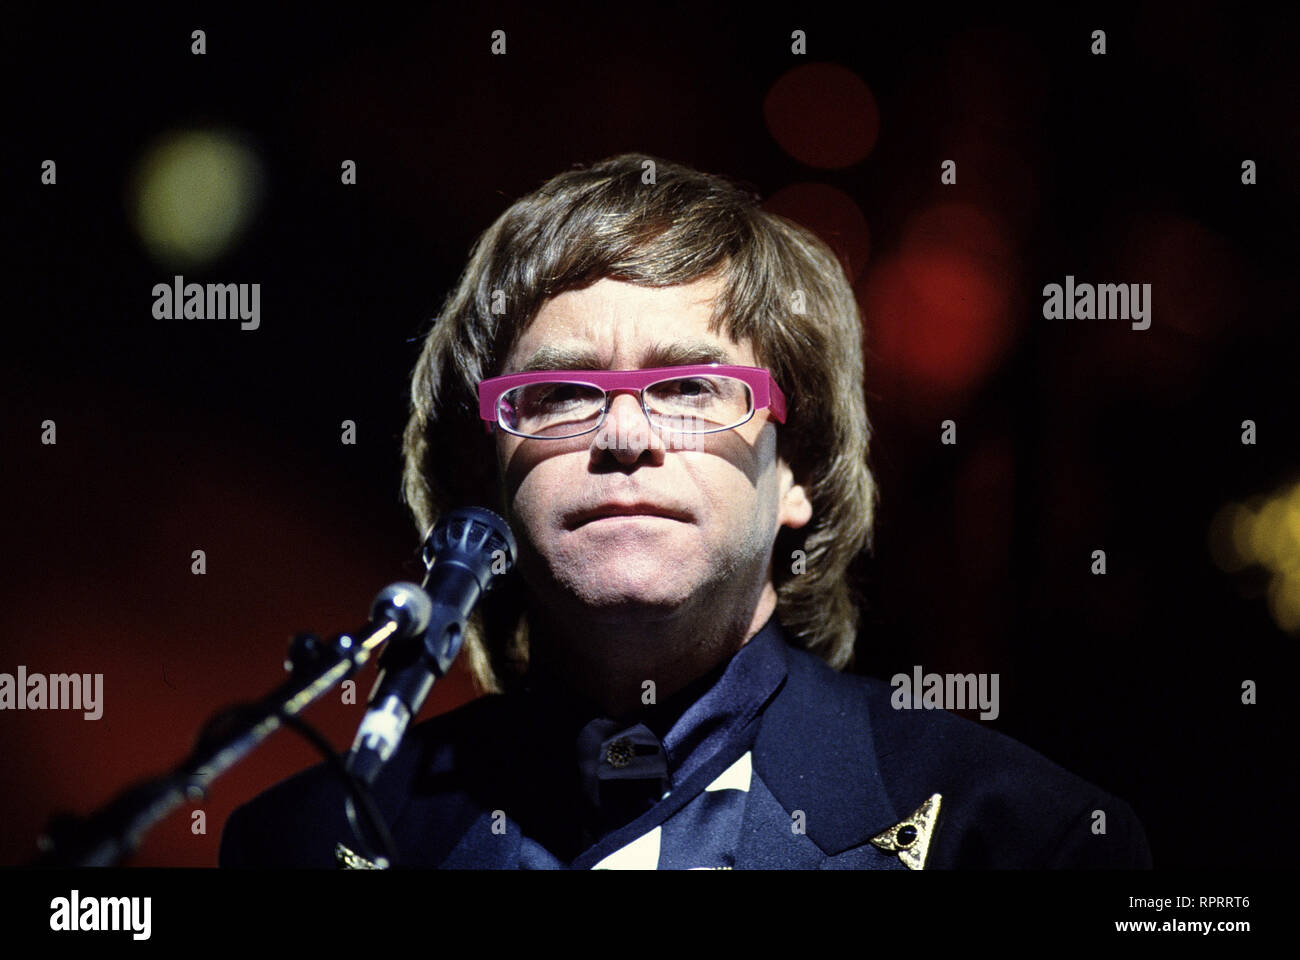 ELTON JOHN wurde am 25. März 1947 à Pinner dans le Middlesex geboren. Elton John und sein Texter Bernie Tauping sind das fahrrad Songwriter-Duo. Elton John ist seit den 70er Jahren mit der erfolgreichsten Rockmusiker. 1971 landete er gleich fünf LPs dans den Hitparaden-nous. Zu den grÜßten Erfolgen des Sängers Pianisten zählen und wie chansons : "Rocket Man", "Les yeux bleus" ou "Je suis toujours debout". Elton John ist auch als Mäzen Kunstsammler und bekannt. 2000 erhielt er einen Ehren-Grammy für sein Werk. Foto : 1995 / Überschrift : Elton John Banque D'Images